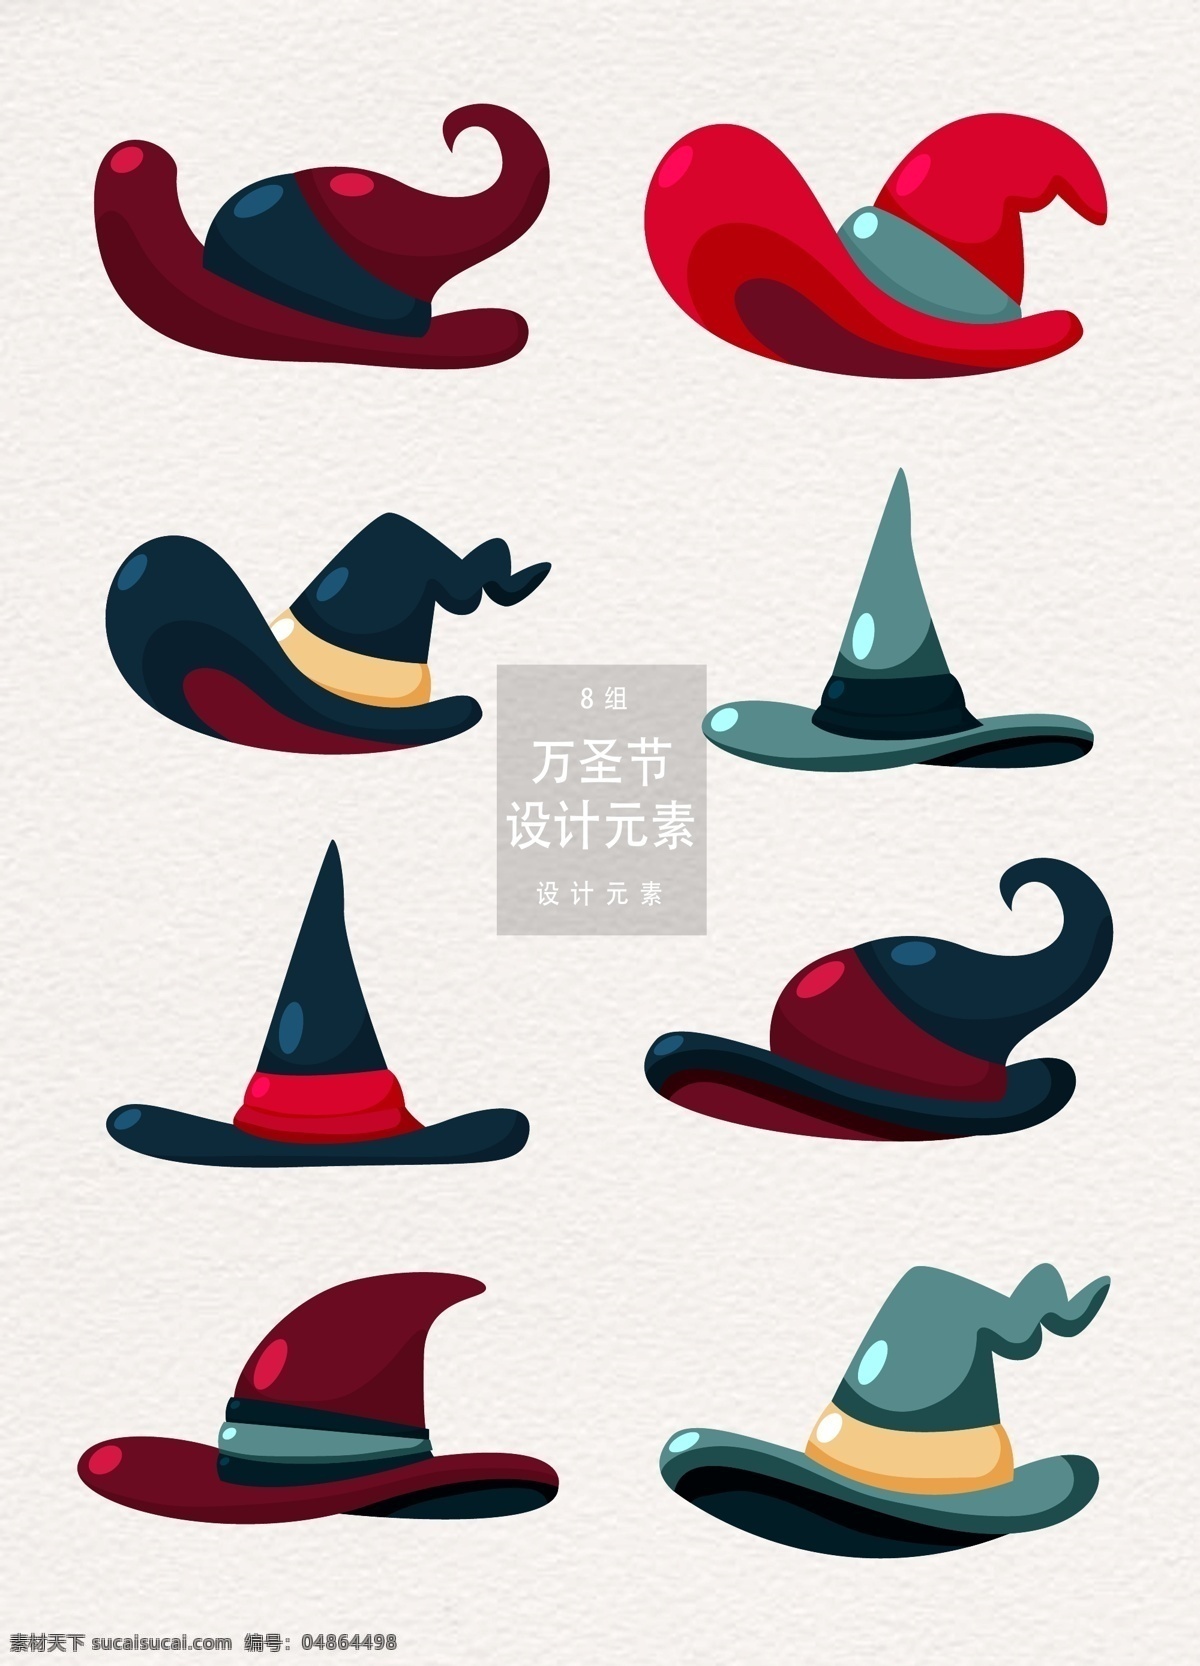 万圣节 女巫 帽子 装饰设计 元素 设计元素 魔法 矢量素材 万圣节元素 女巫帽子 ai素材